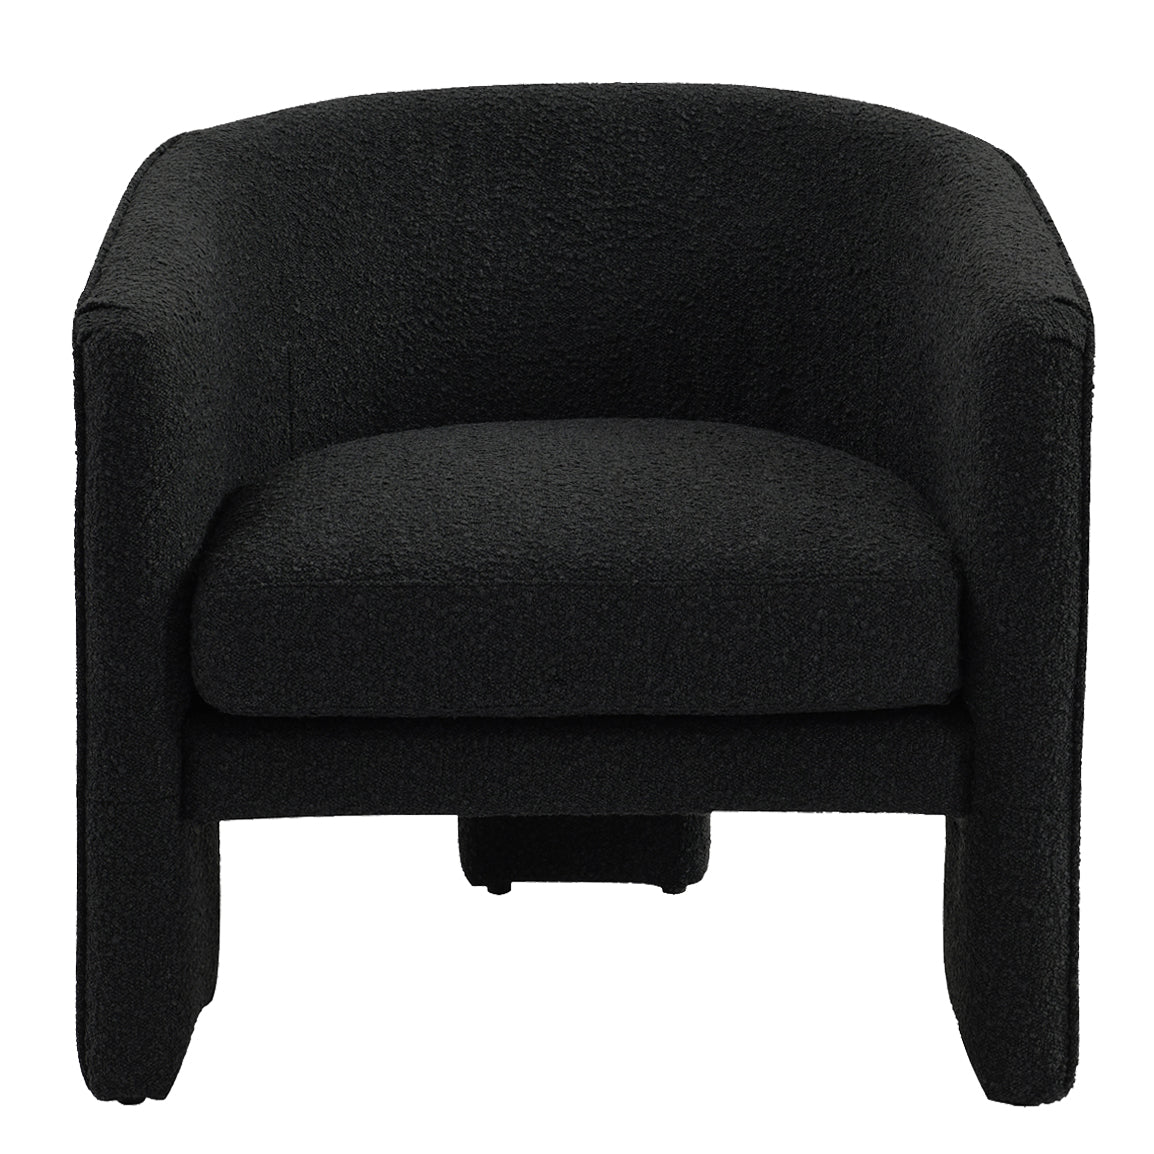 Kylie Arm Chair - Black Onyx Boucle